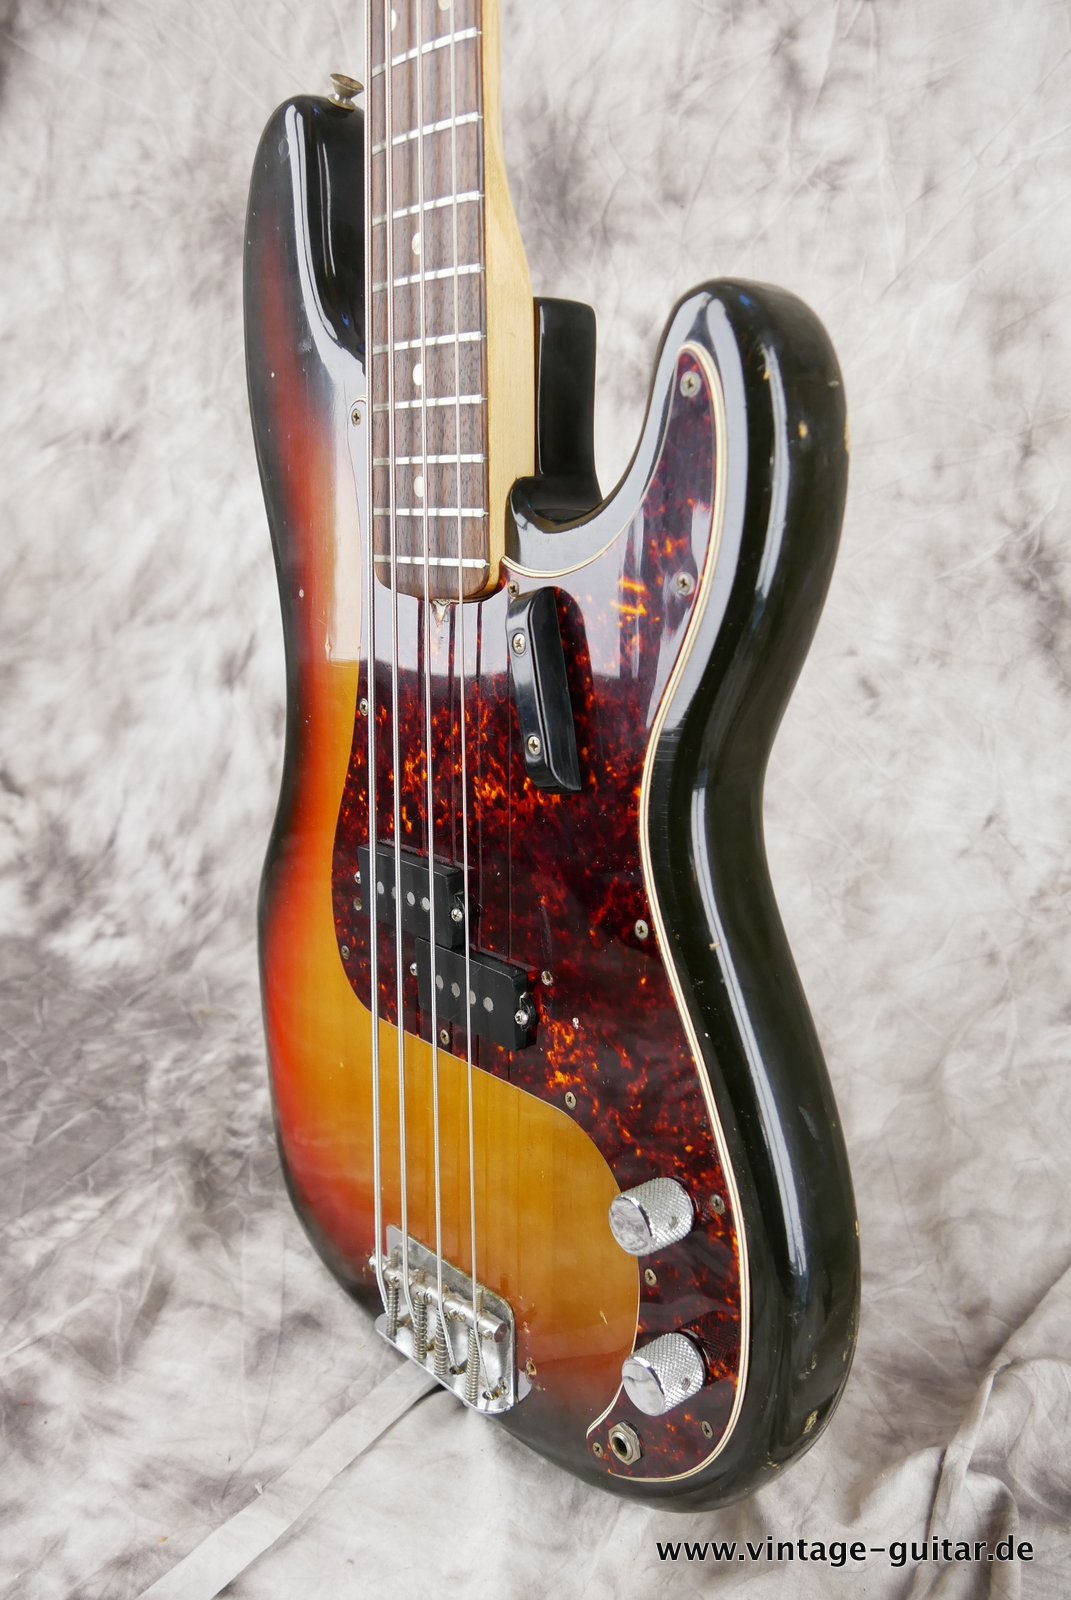 Fender-Precision-Bass-sunburst-1969-006.JPG